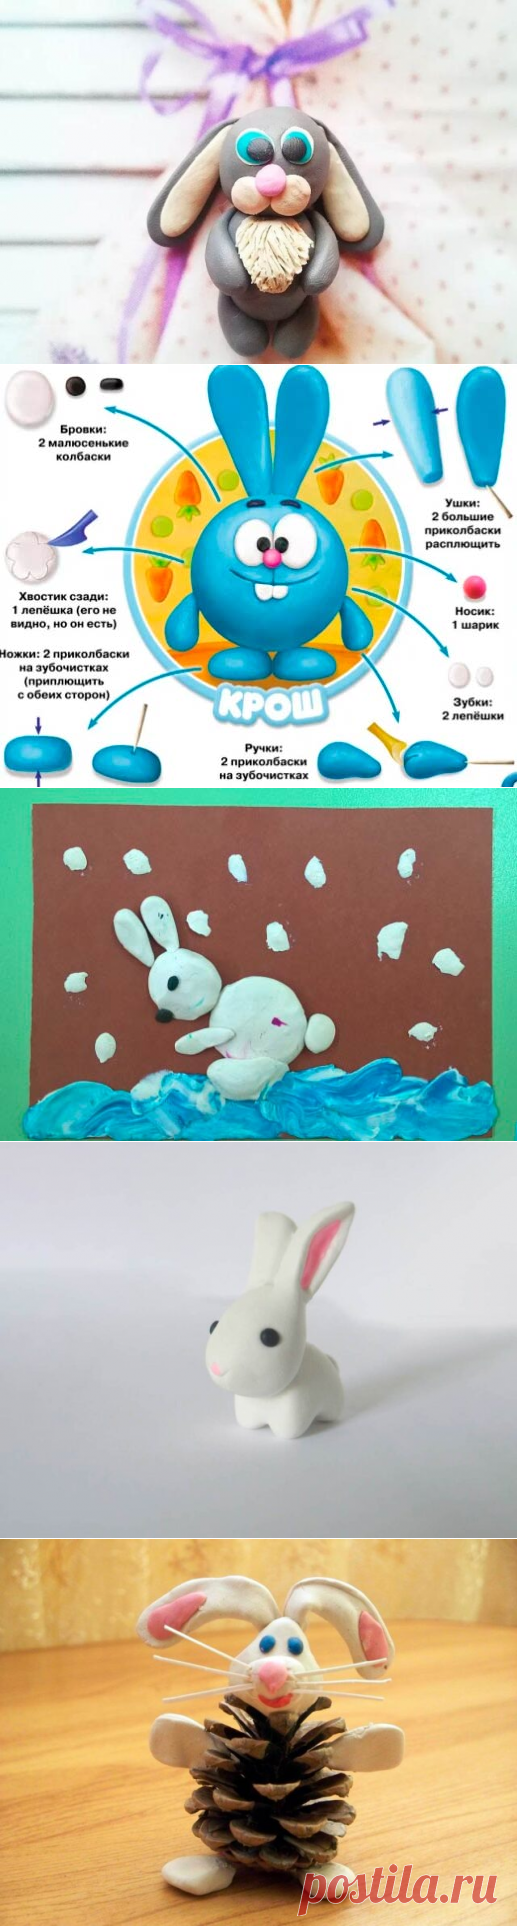 Зайчик из пластилина: как слепить пластилинового зайца для детей и сделать поделки своими руками, заяц из ну погоди лепим с детьми поэтапно - схемы фигурка зайца